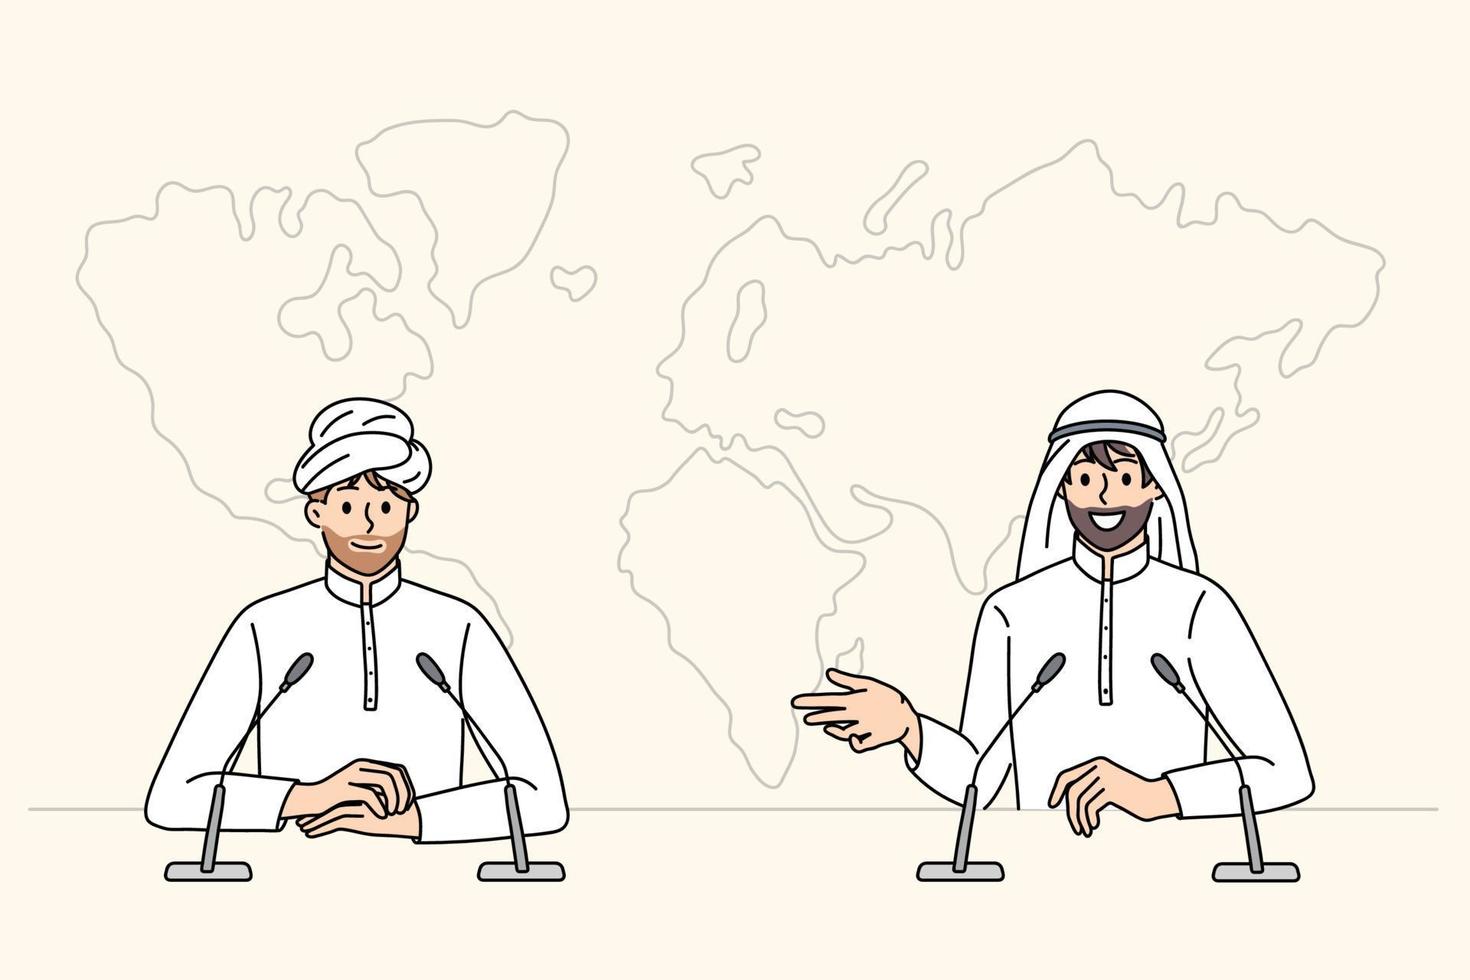 conferencia de prensa del concepto de empresarios árabes. dos hombres islam socios hombres de negocios sentados hablando con conferencia de prensa ilustración vectorial vector